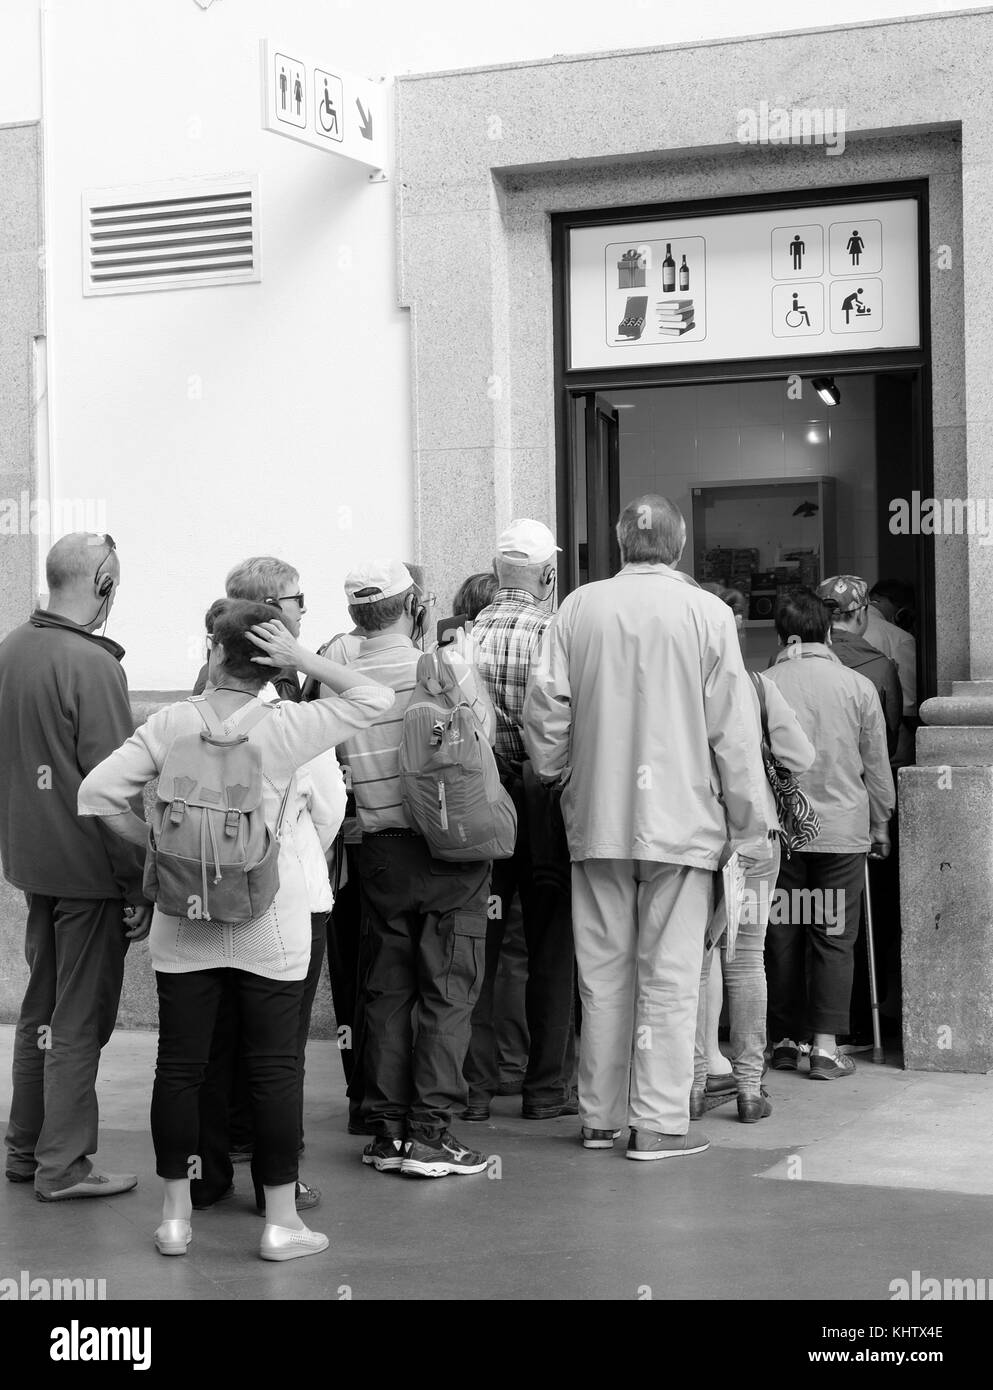 Septembre 2017 - debout en ligne pour les toilettes de la gare de Porto, les seuls publics de toute la ville Banque D'Images